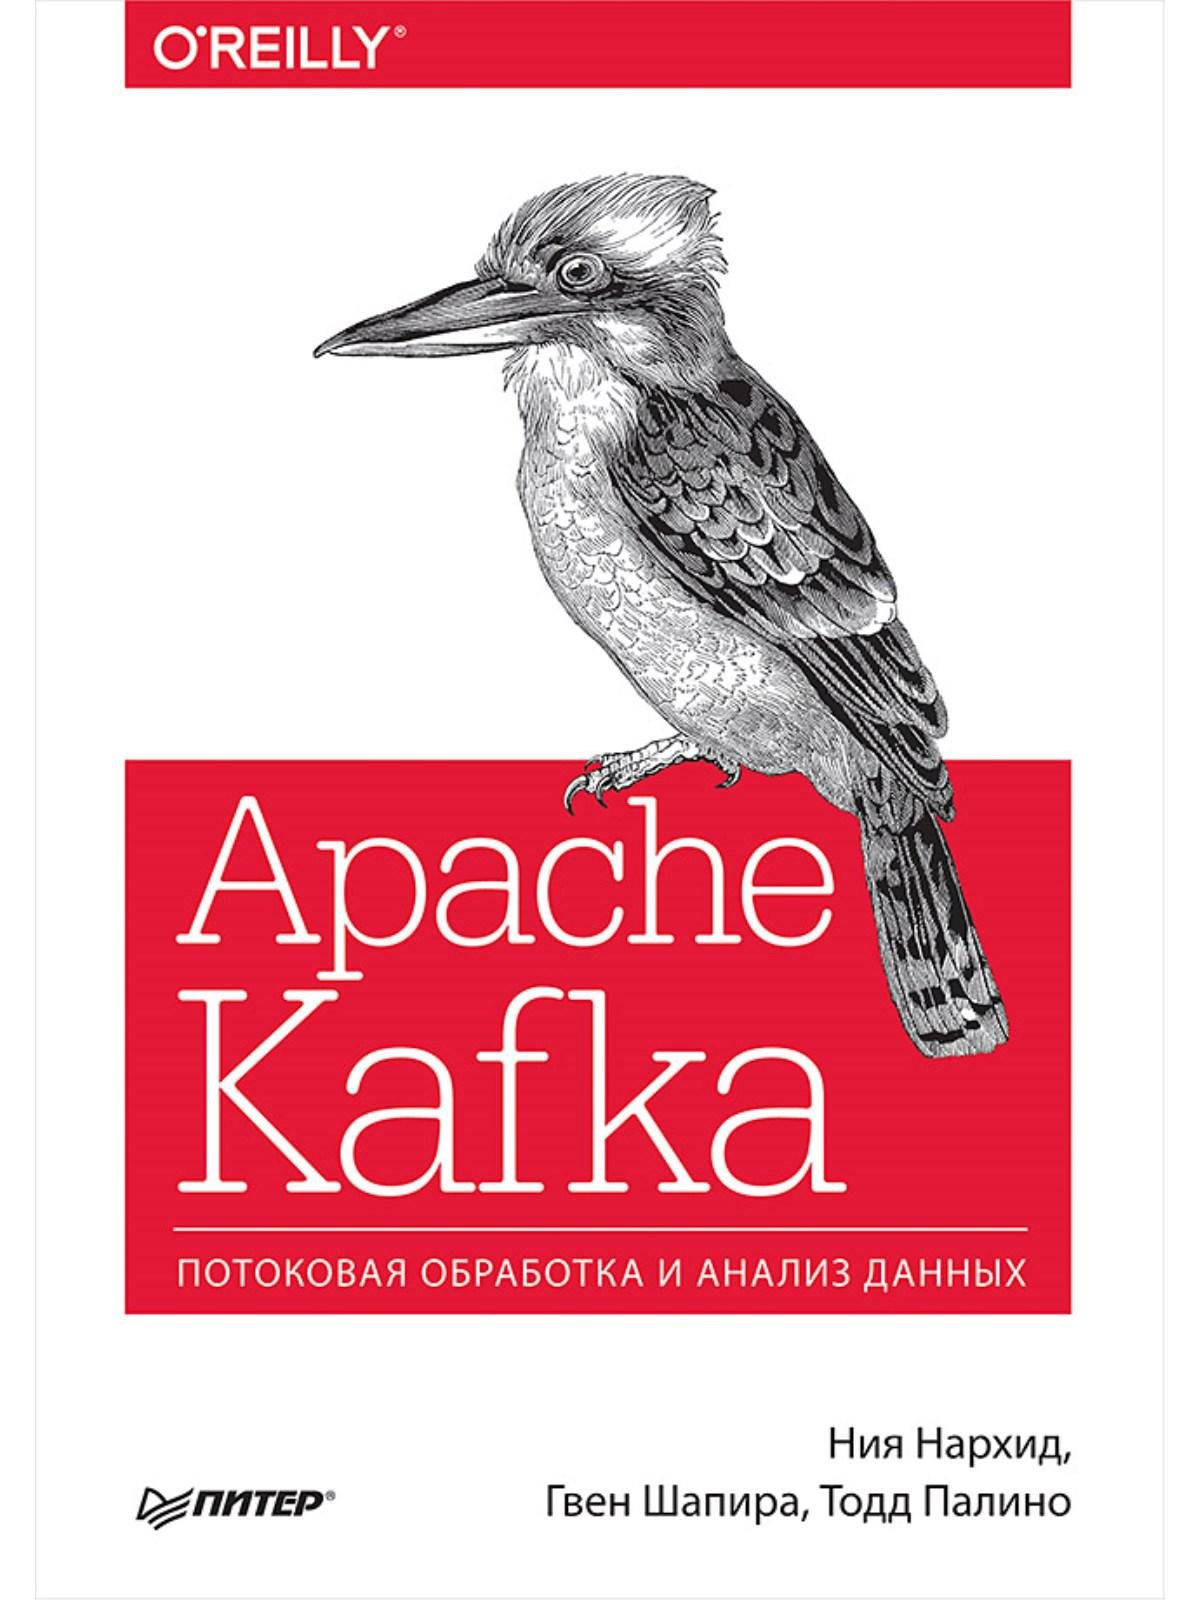 Нархид Ния, Шапира Гвен, Палино Тодд - Apache Kafka. Потоковая обработка и анализ данных